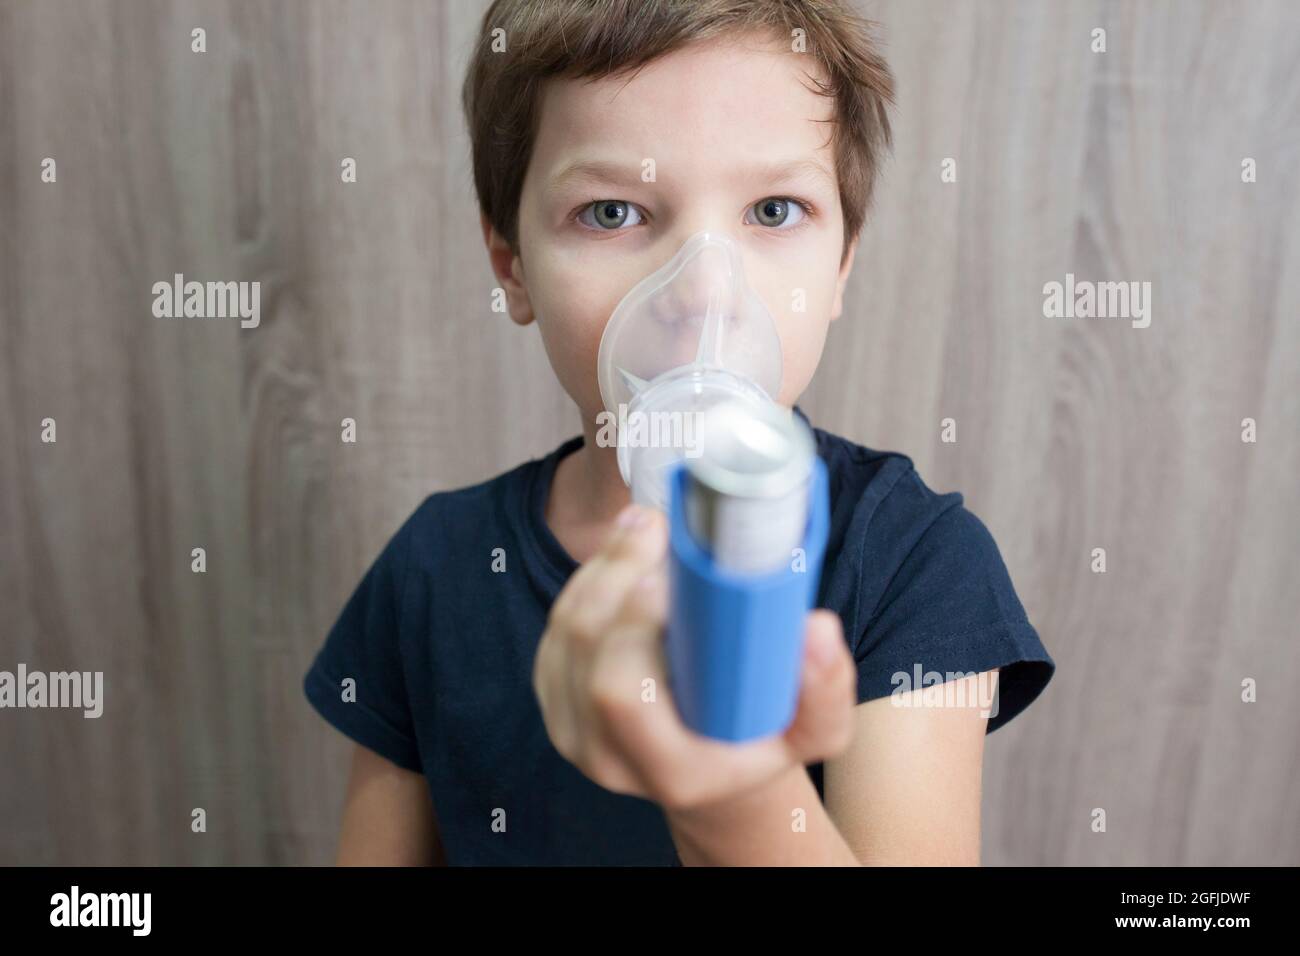 Enfant garçon utilisant un spray médical pour respirer. Inhalateur, espaceur et masque. Vue avant Banque D'Images